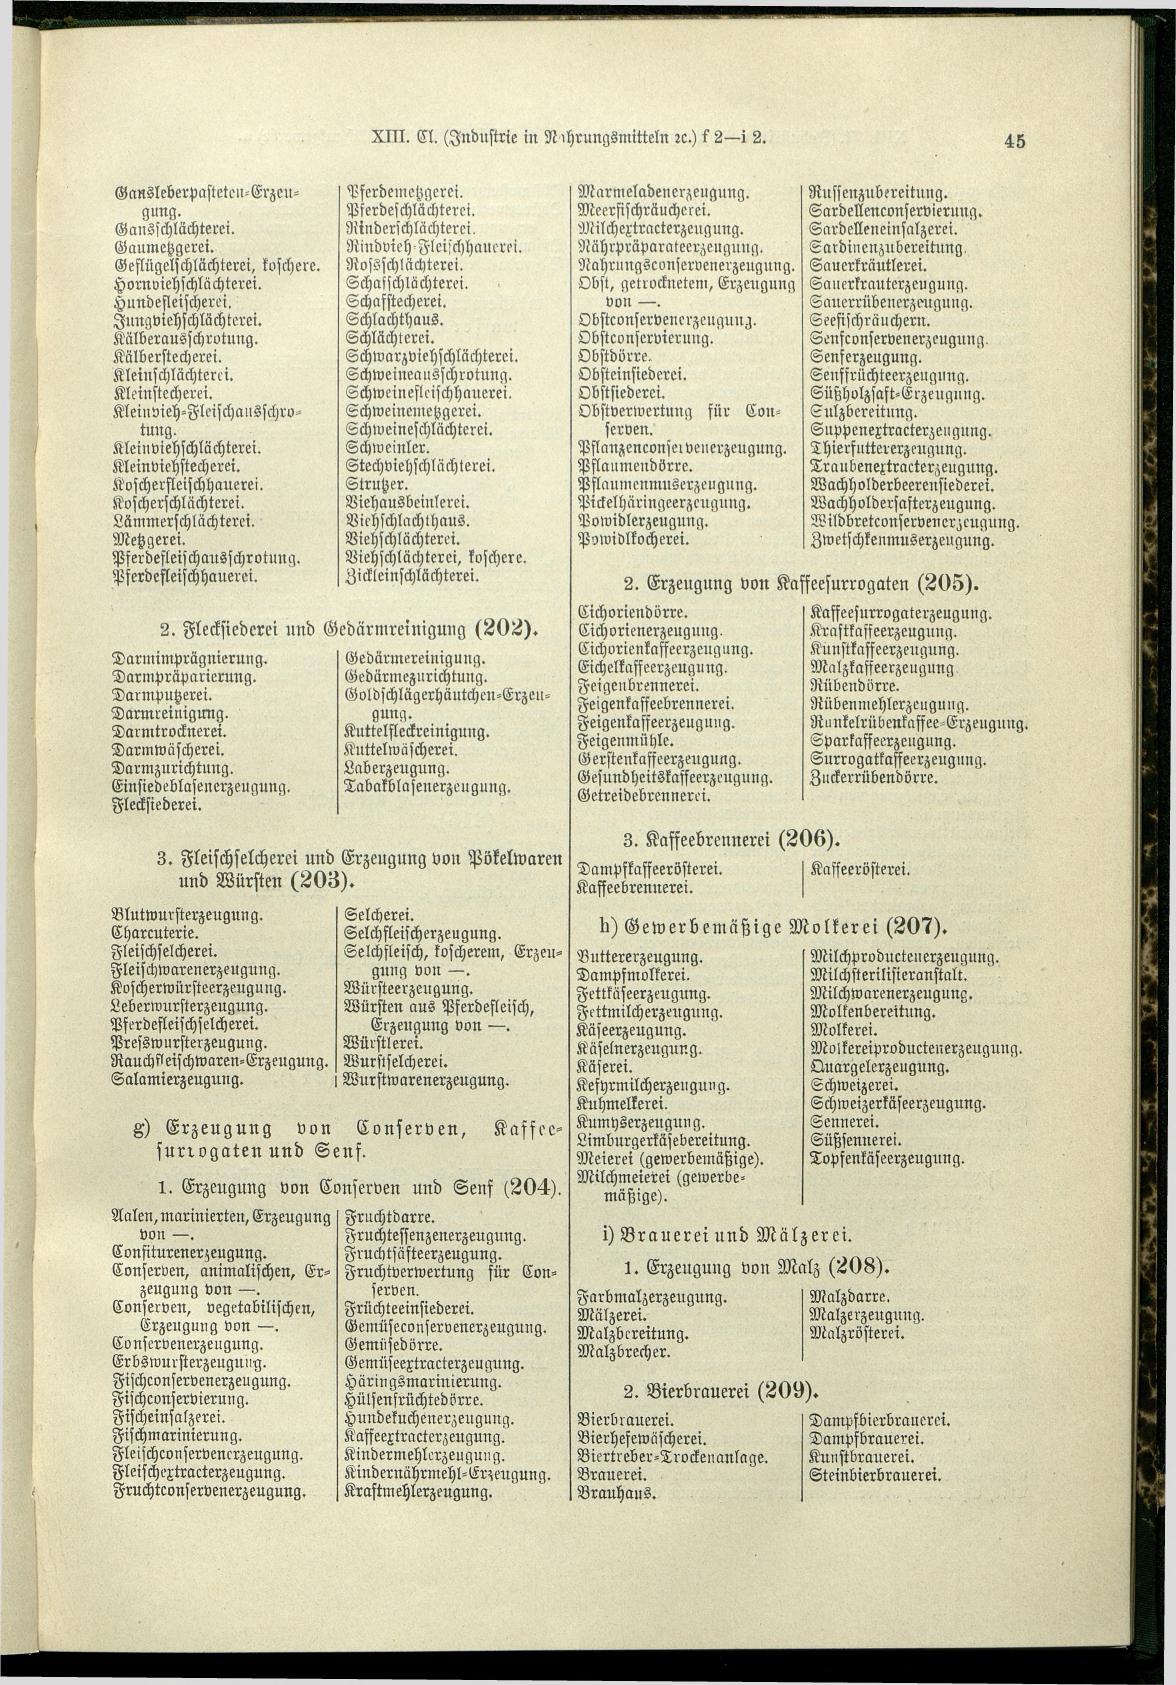 Verzeichnis der Gewerbe der im Reichsrathe vertretenen Königreiche und Länder 1900 - Seite 49